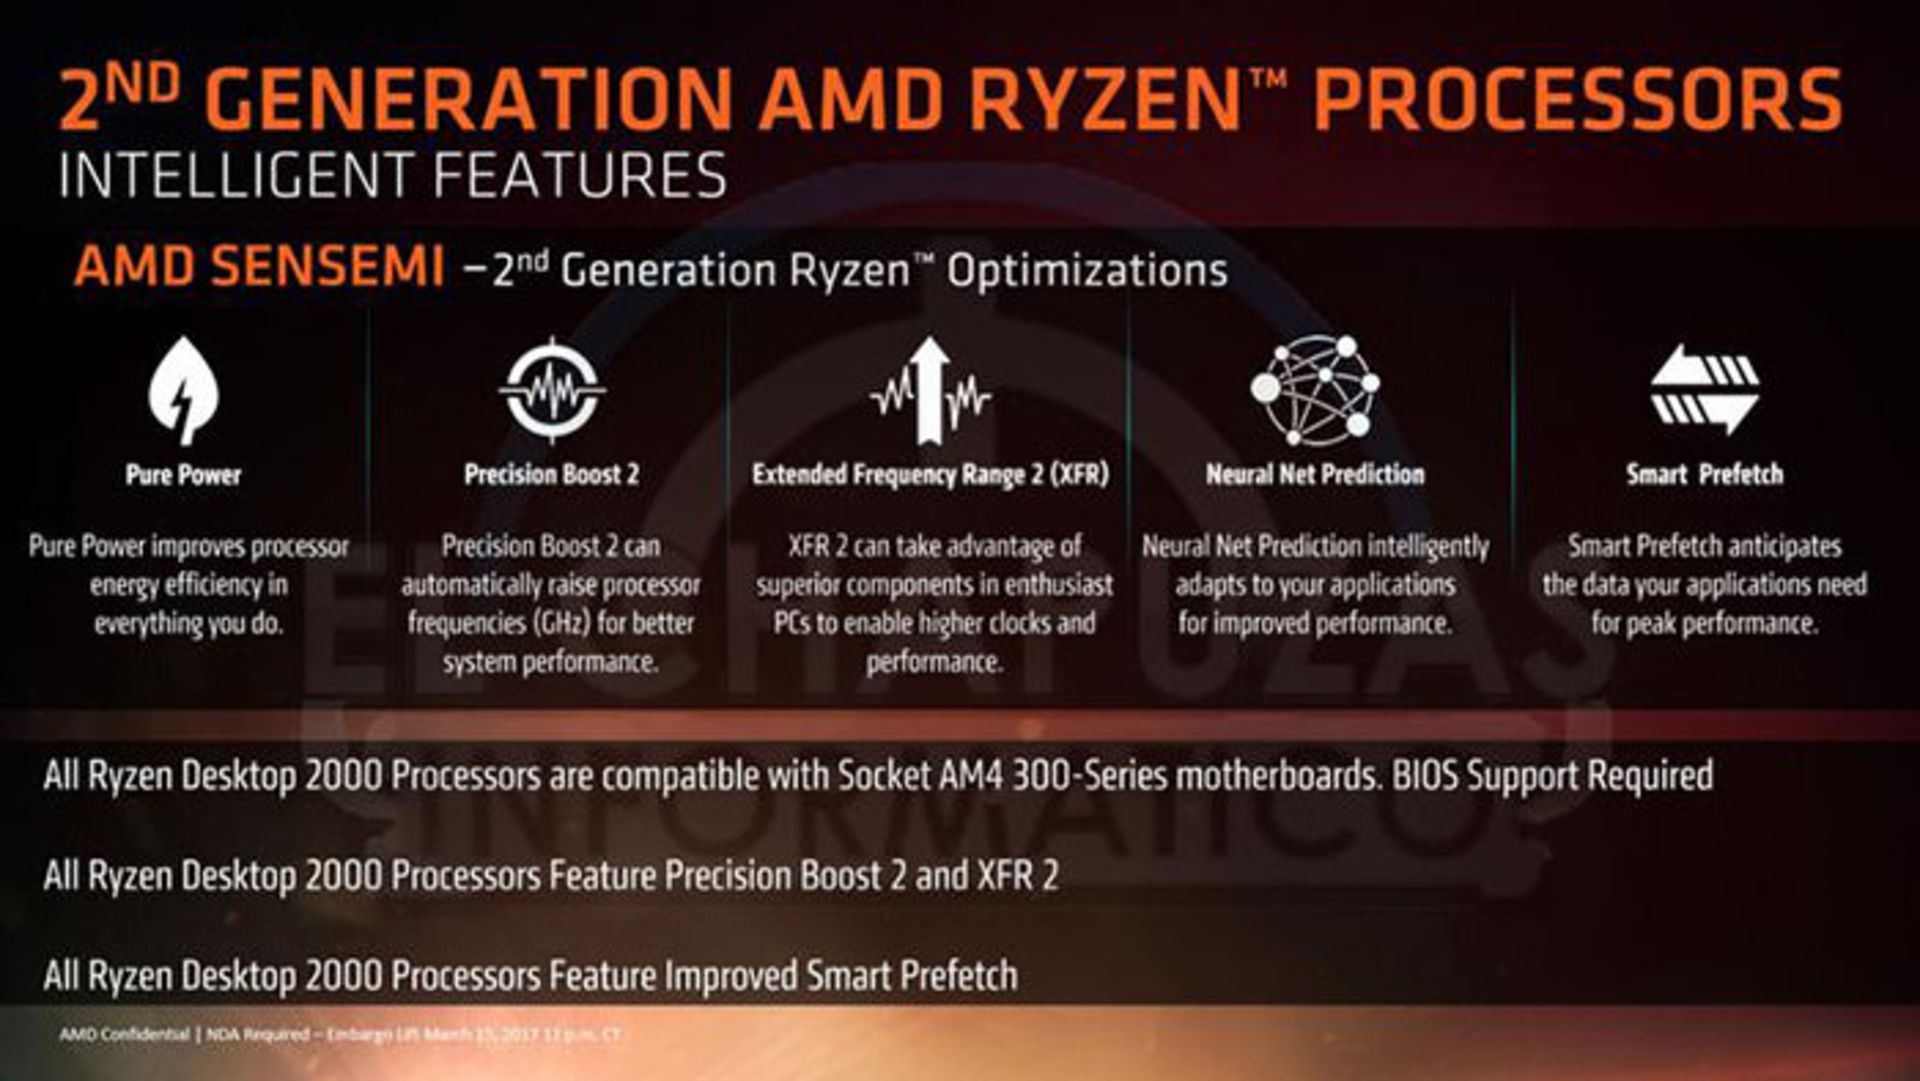 AMD RYZEN2 ای ام دی رایزن ۲